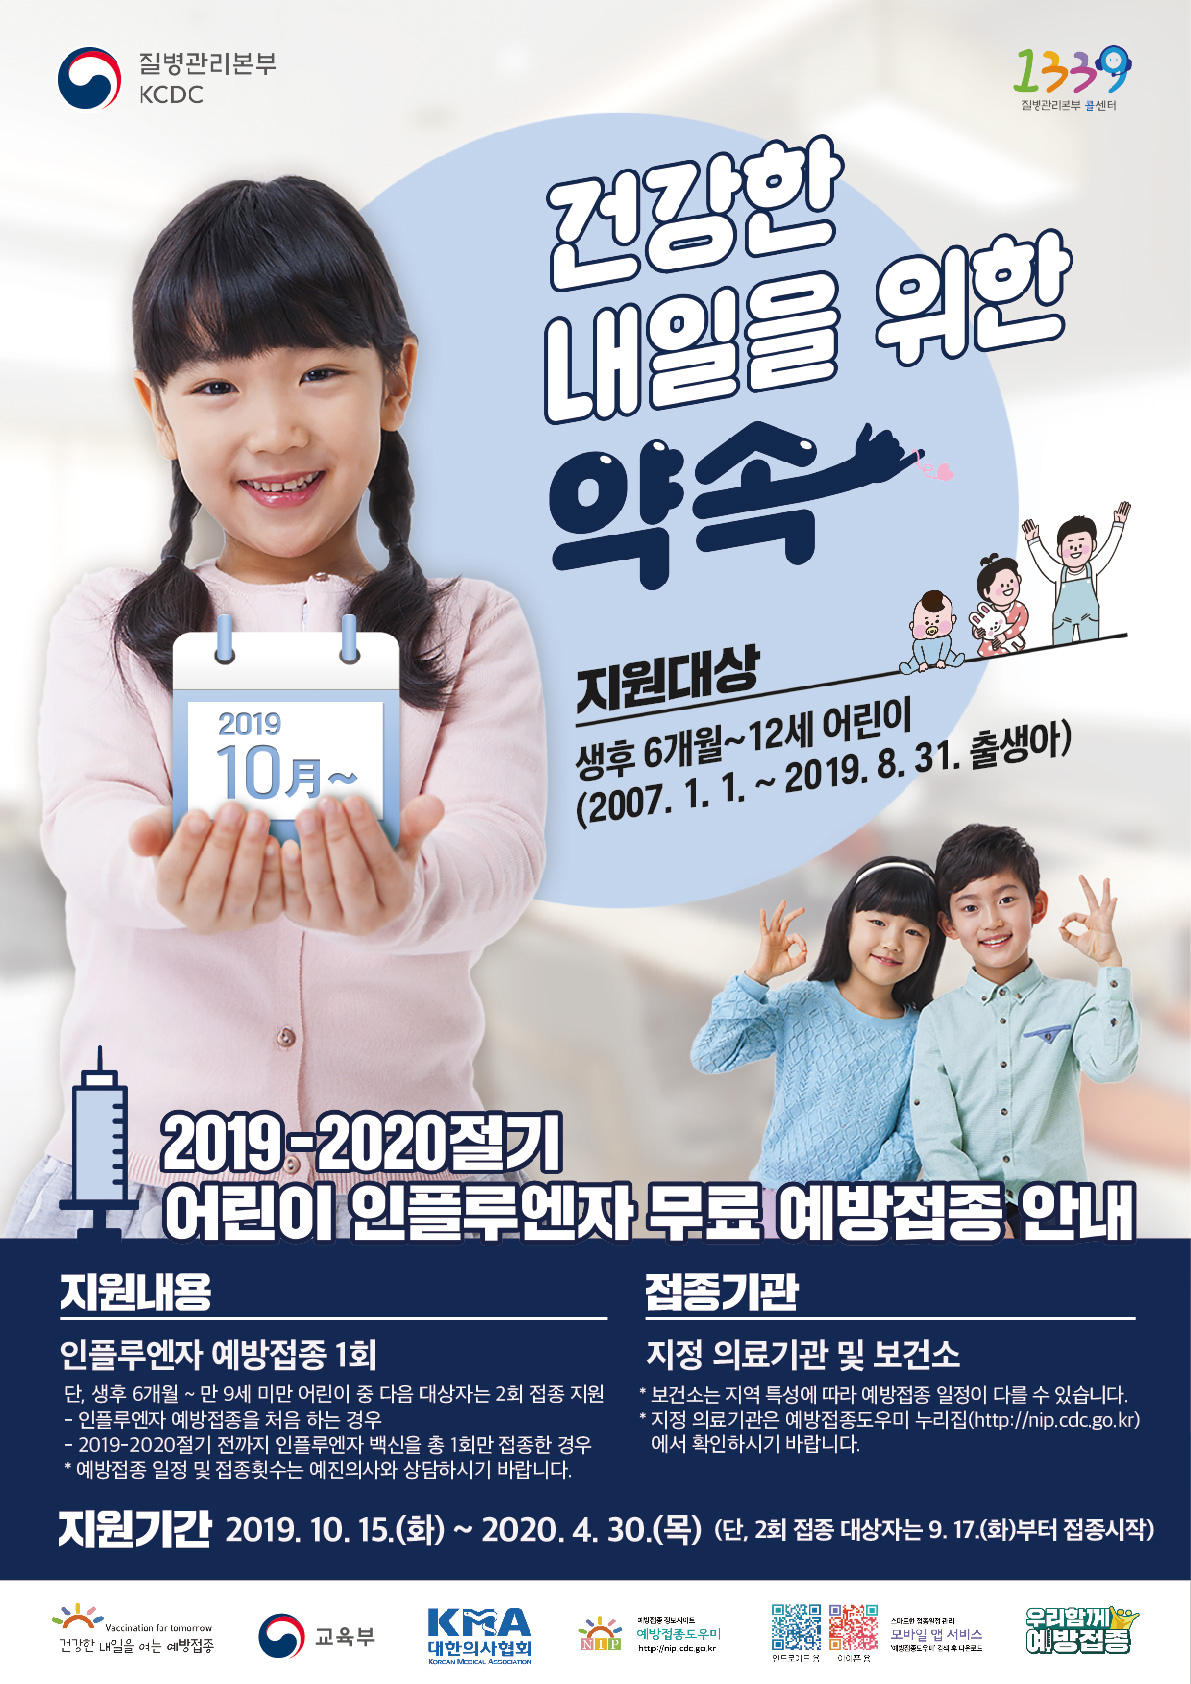 [공유] 2019-2020절기 인플루엔자 국가예방접종 지원사업 어린이 포스터 (썸네일)